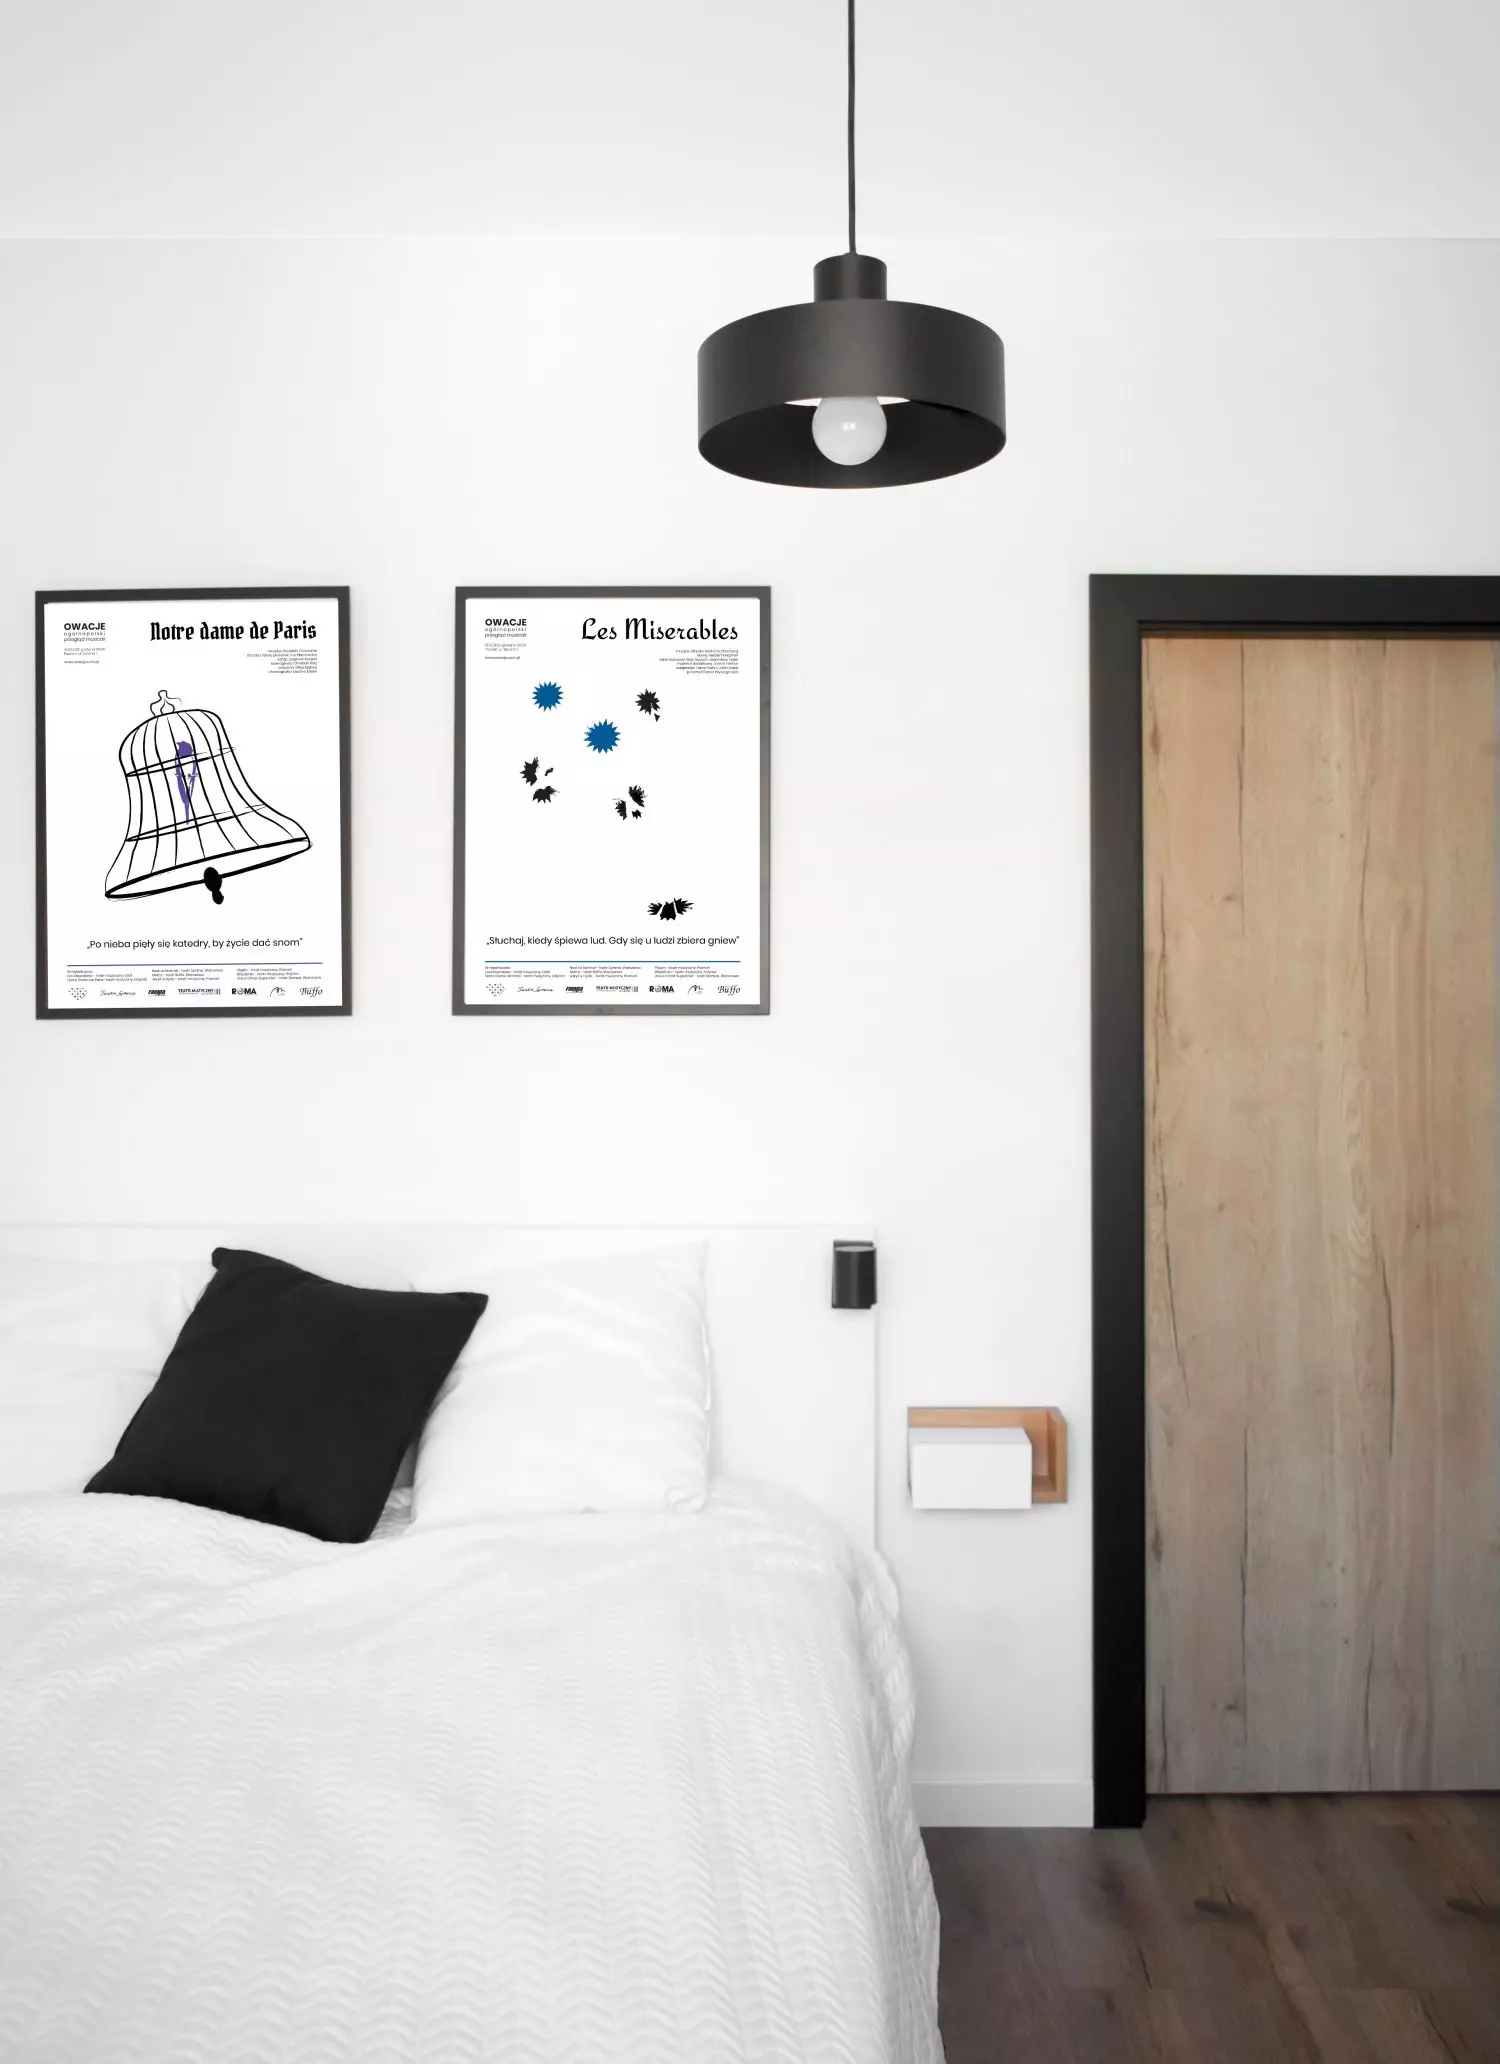 Sypialnia
i plakaty nad łóżkiem